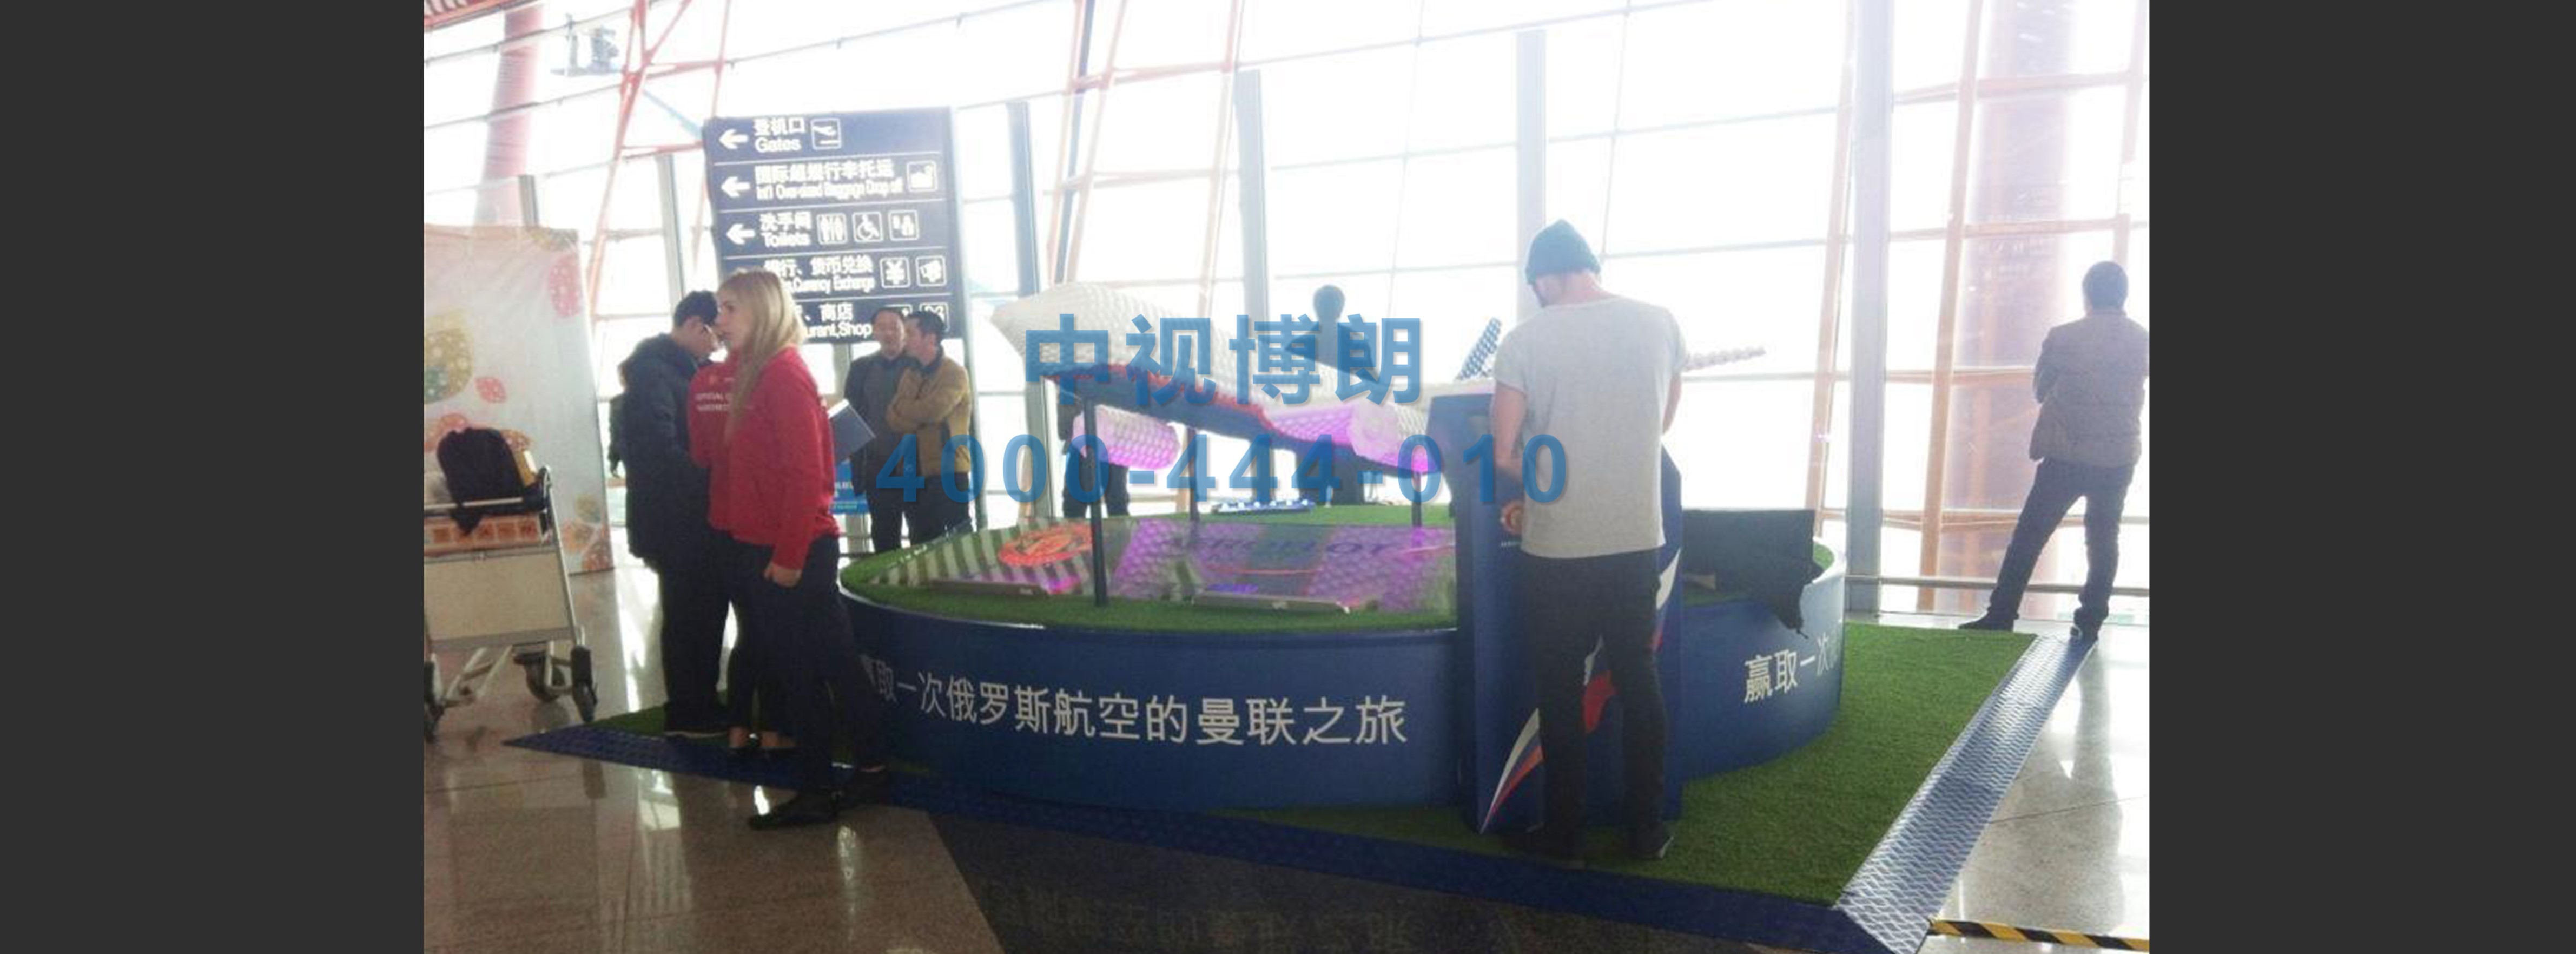 北京首都机场广告-T3 Departure Ticket Hall Physical Booth W004